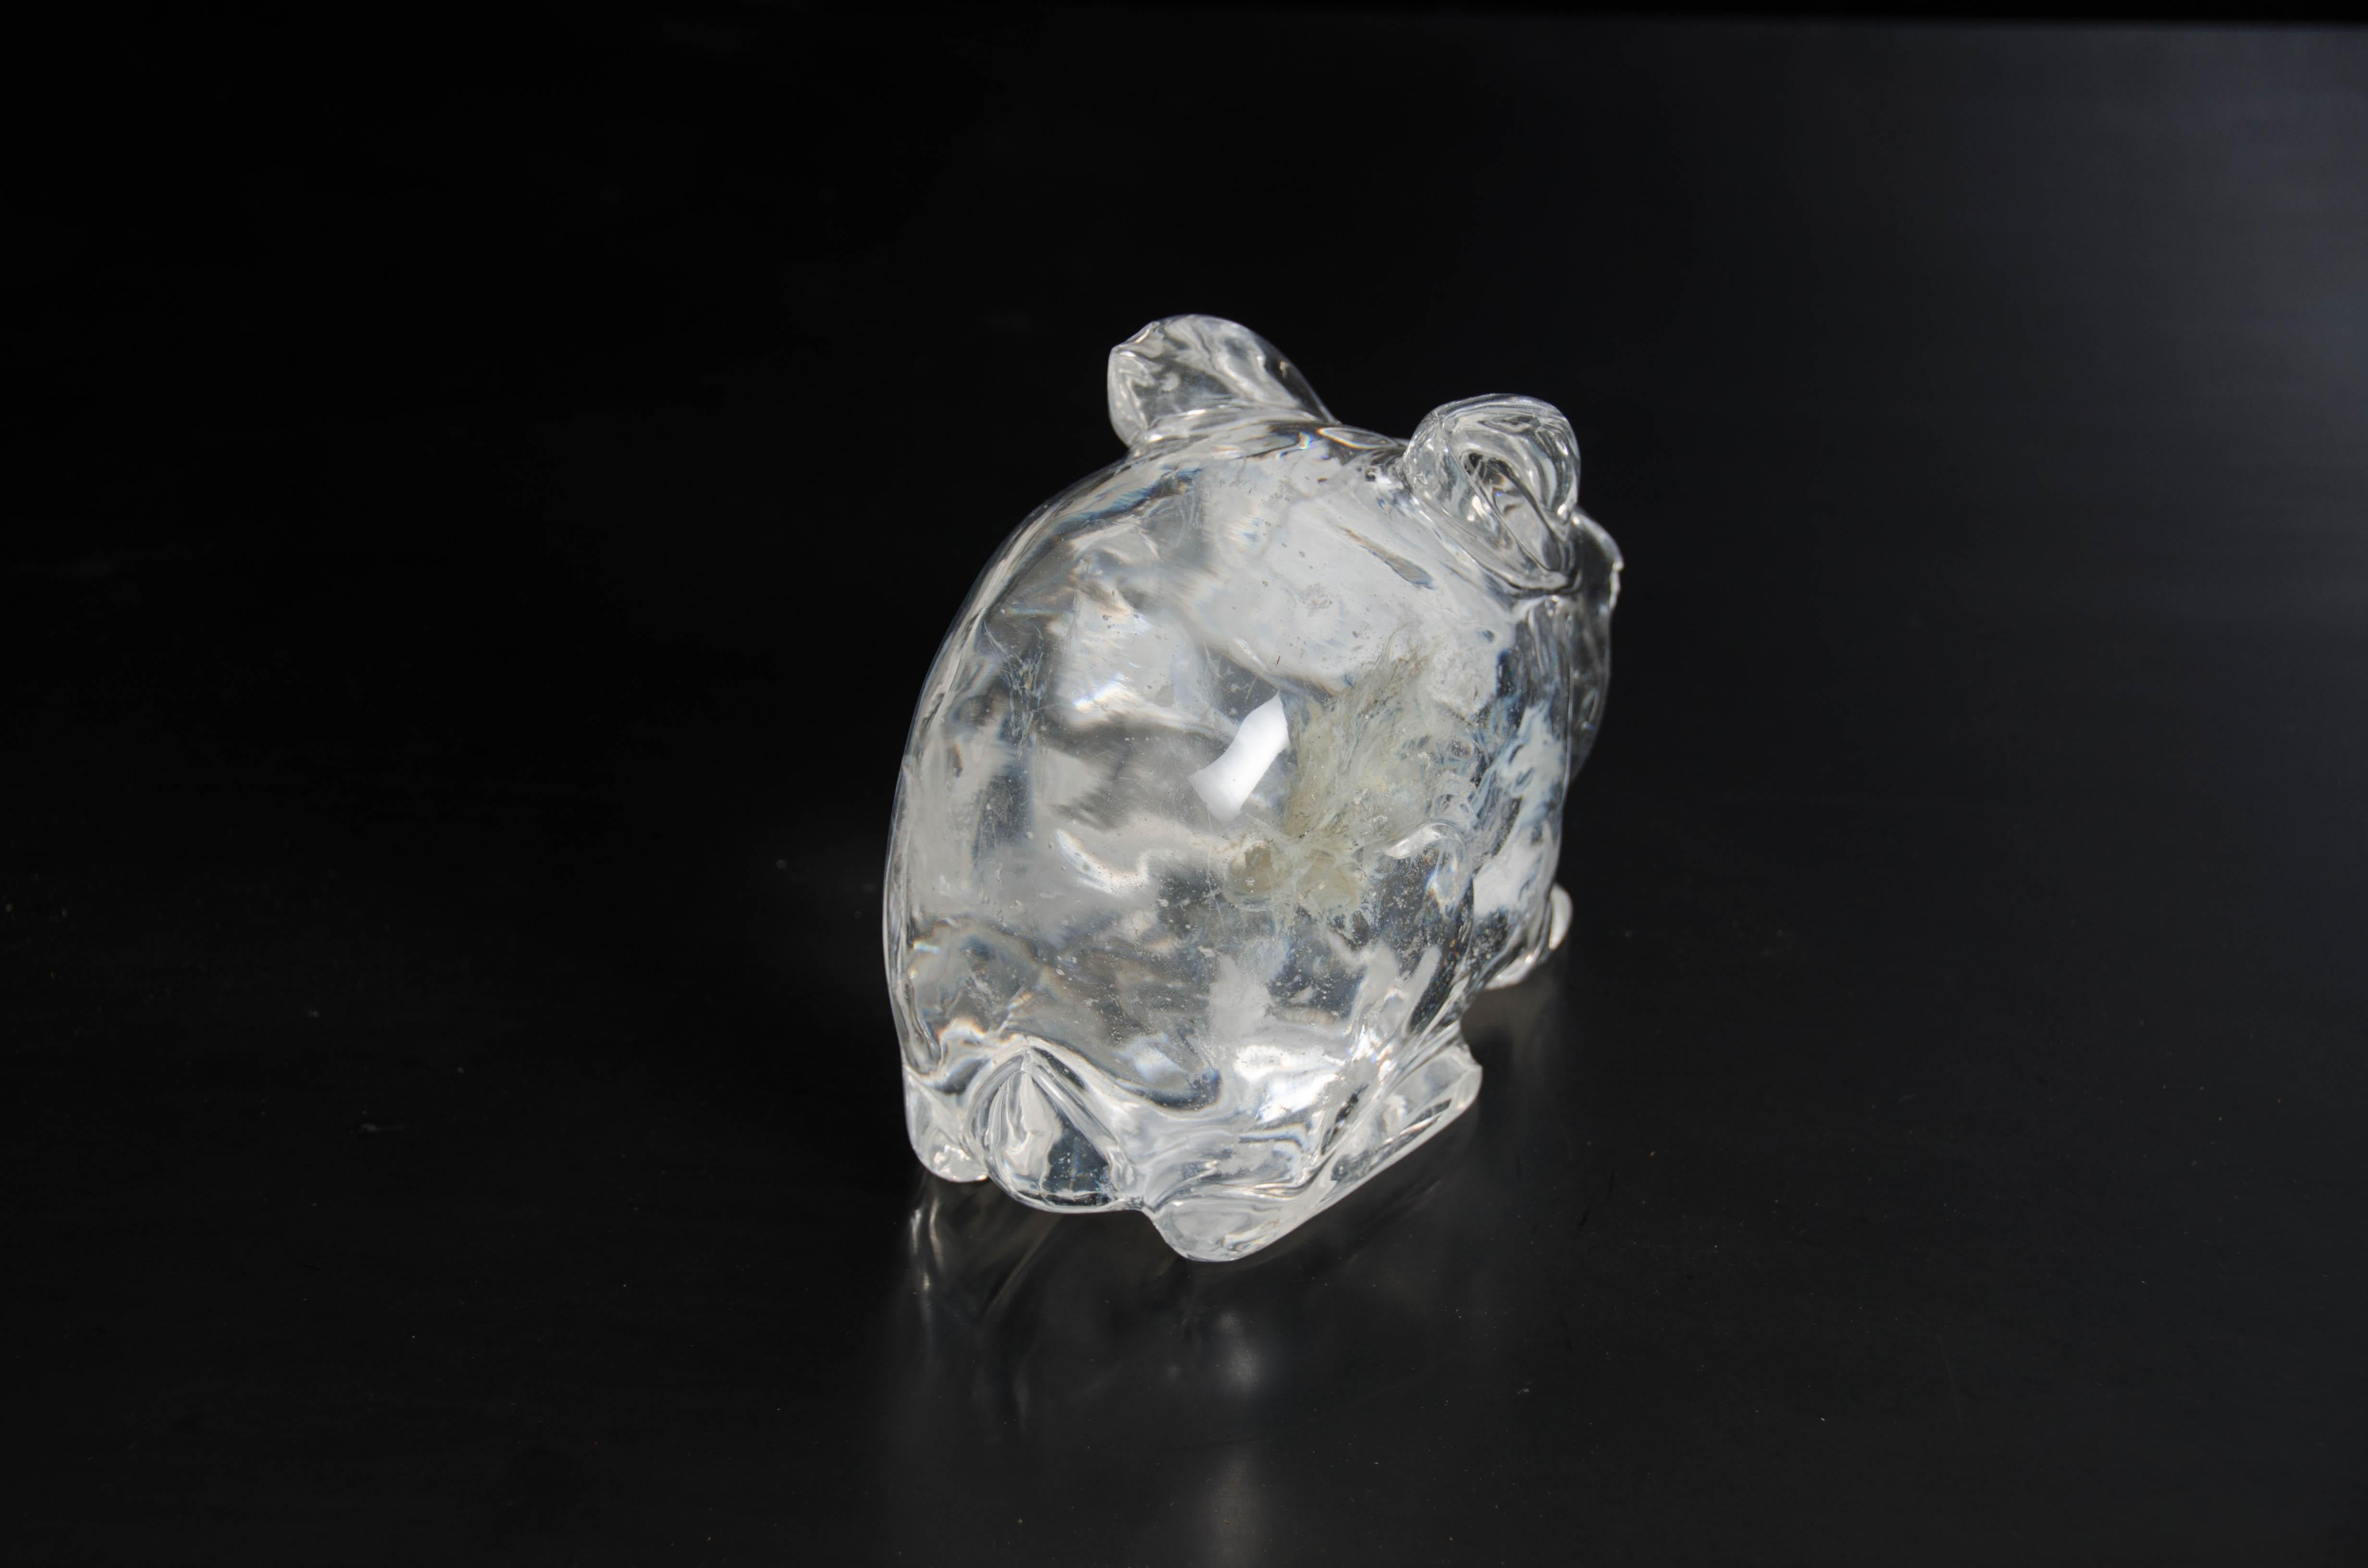 Lapin
Cristal
Sculpté à la main
Les inclusions de cristaux varient
Édition limitée.
         